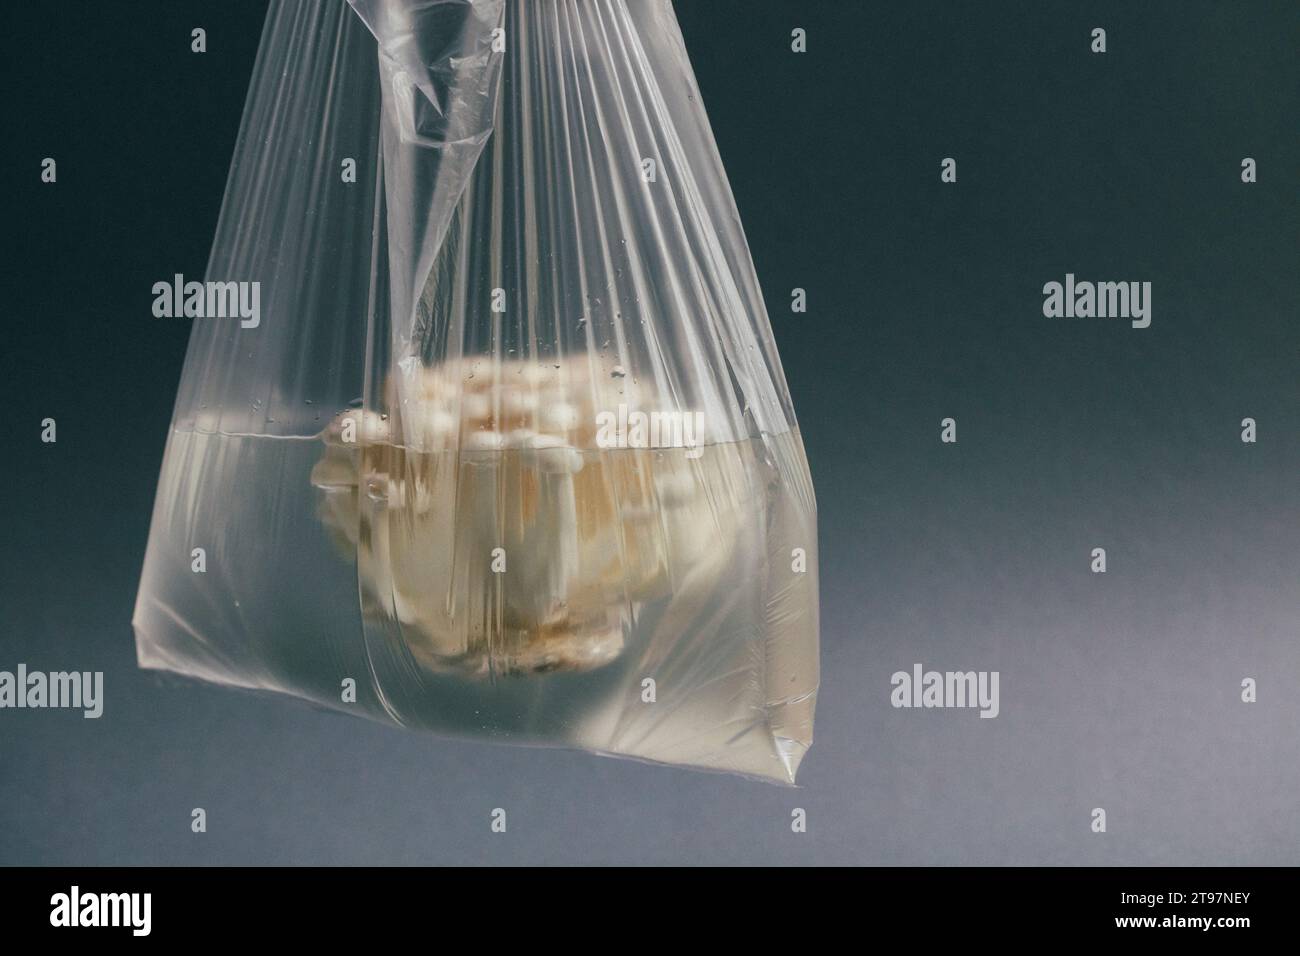 Funghi bianchi in sacchetto di plastica riempito d'acqua Foto Stock